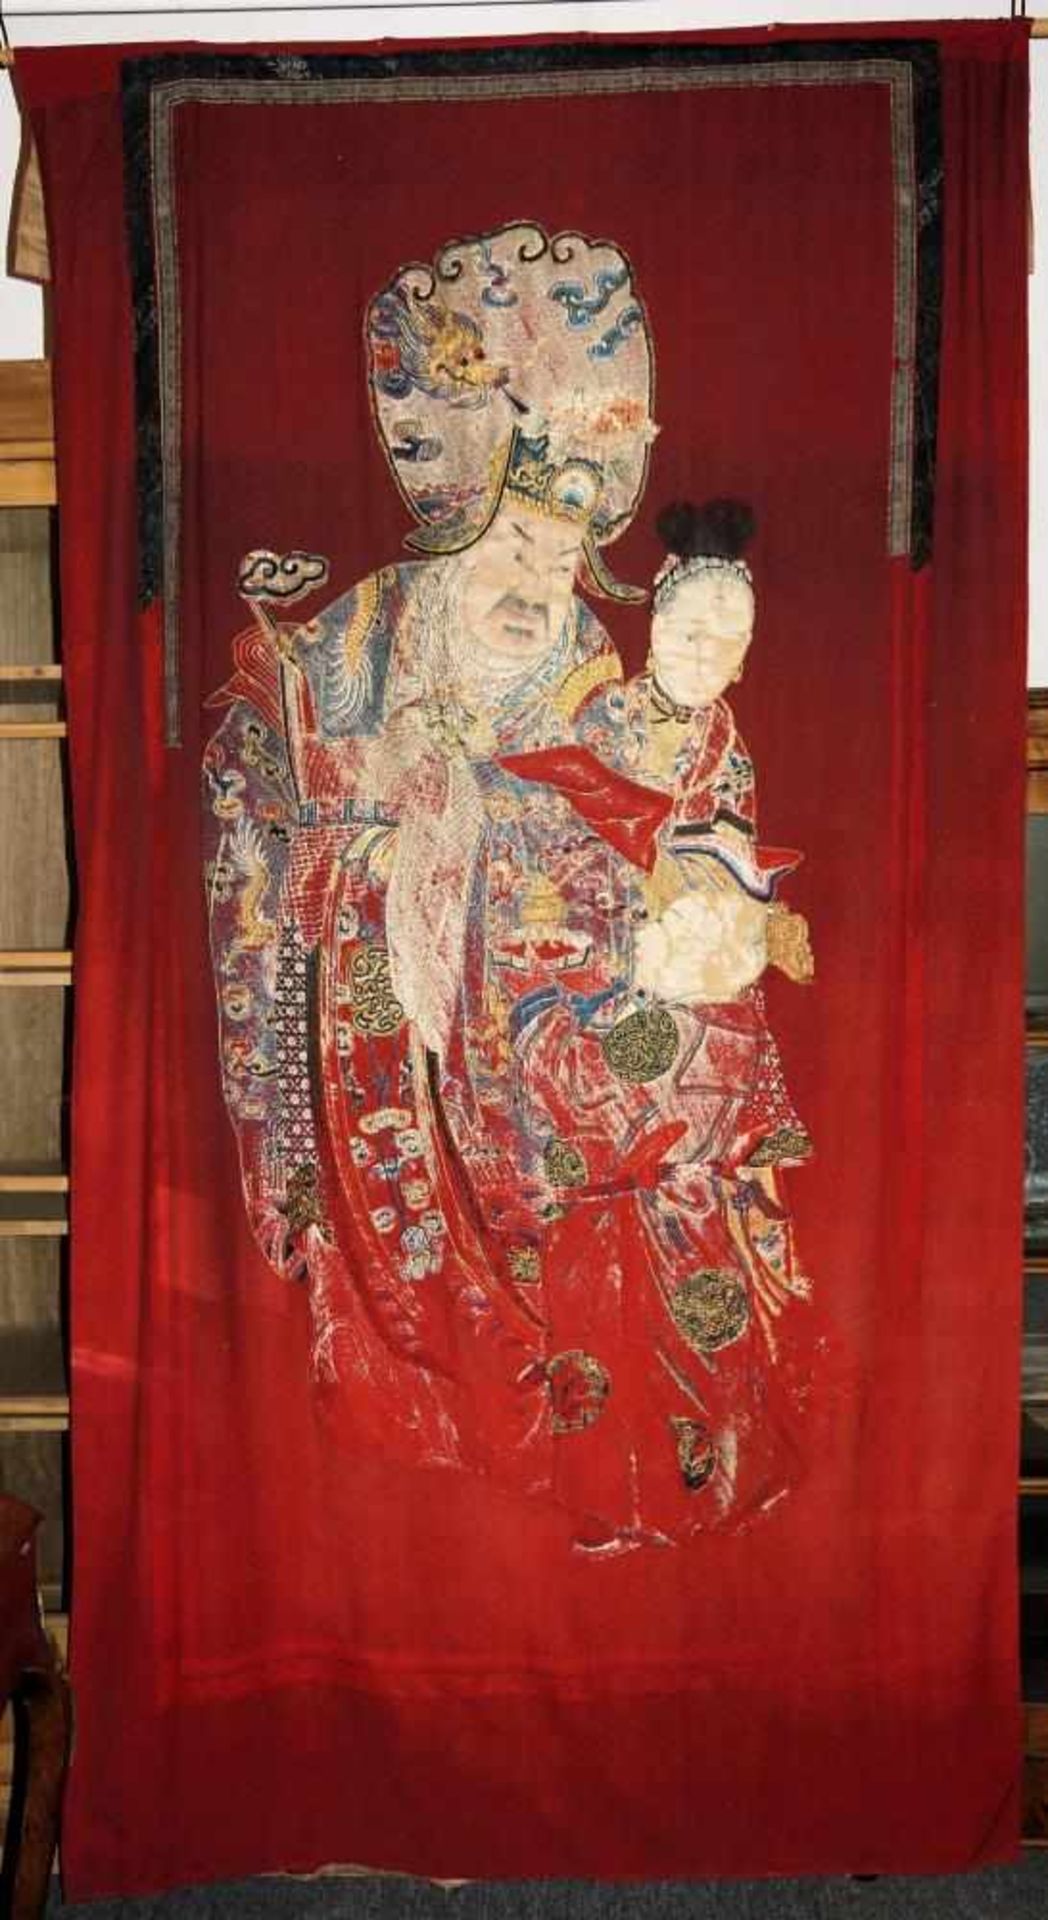 Großer Wandbehang eines legendären Herrschers, Qing-Zeit, China 19. Jh. Aufwändige Stickarbeit eines